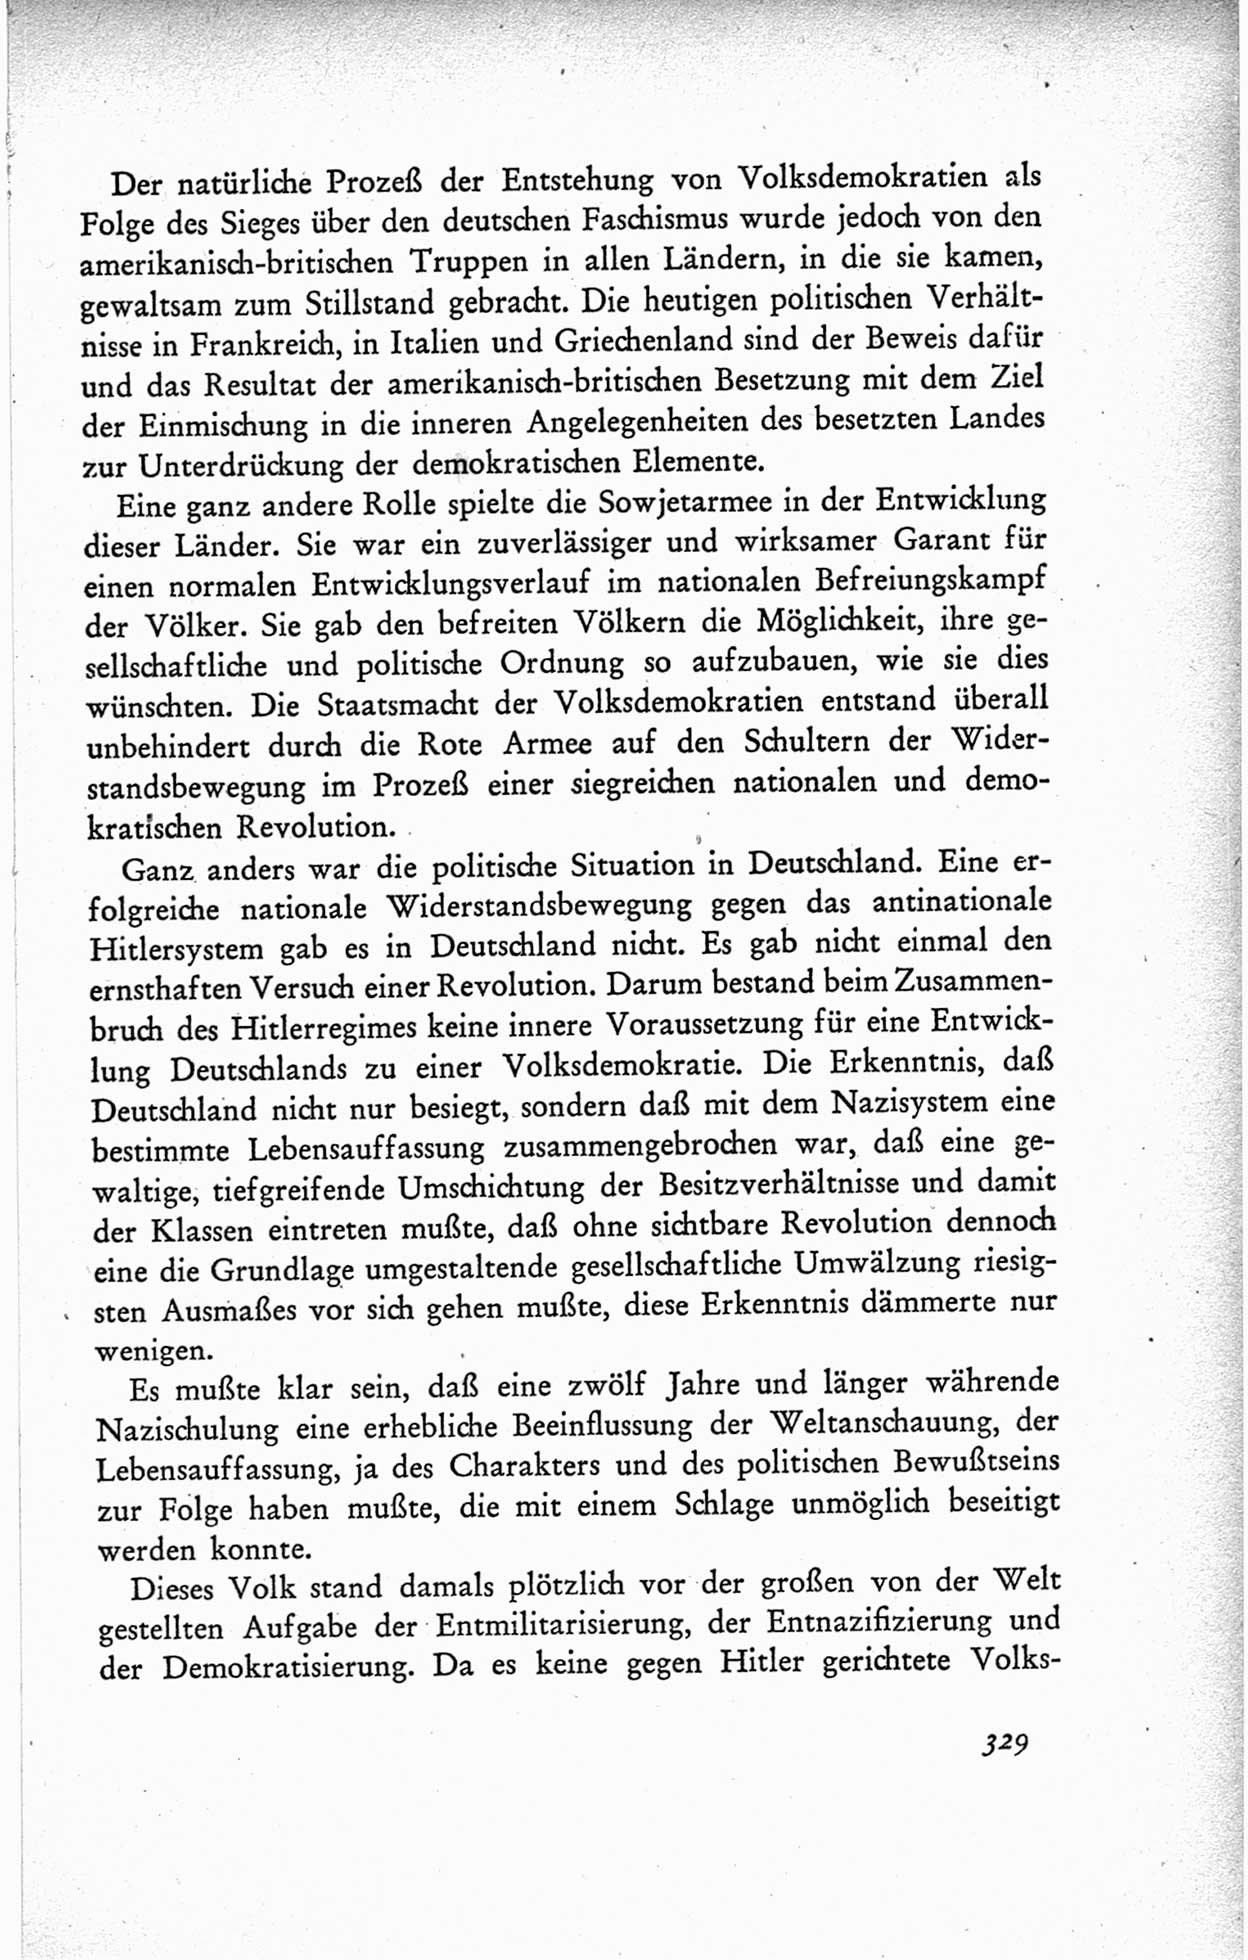 Protokoll der ersten Parteikonferenz der Sozialistischen Einheitspartei Deutschlands (SED) [Sowjetische Besatzungszone (SBZ) Deutschlands] vom 25. bis 28. Januar 1949 im Hause der Deutschen Wirtschaftskommission zu Berlin, Seite 329 (Prot. 1. PK SED SBZ Dtl. 1949, S. 329)